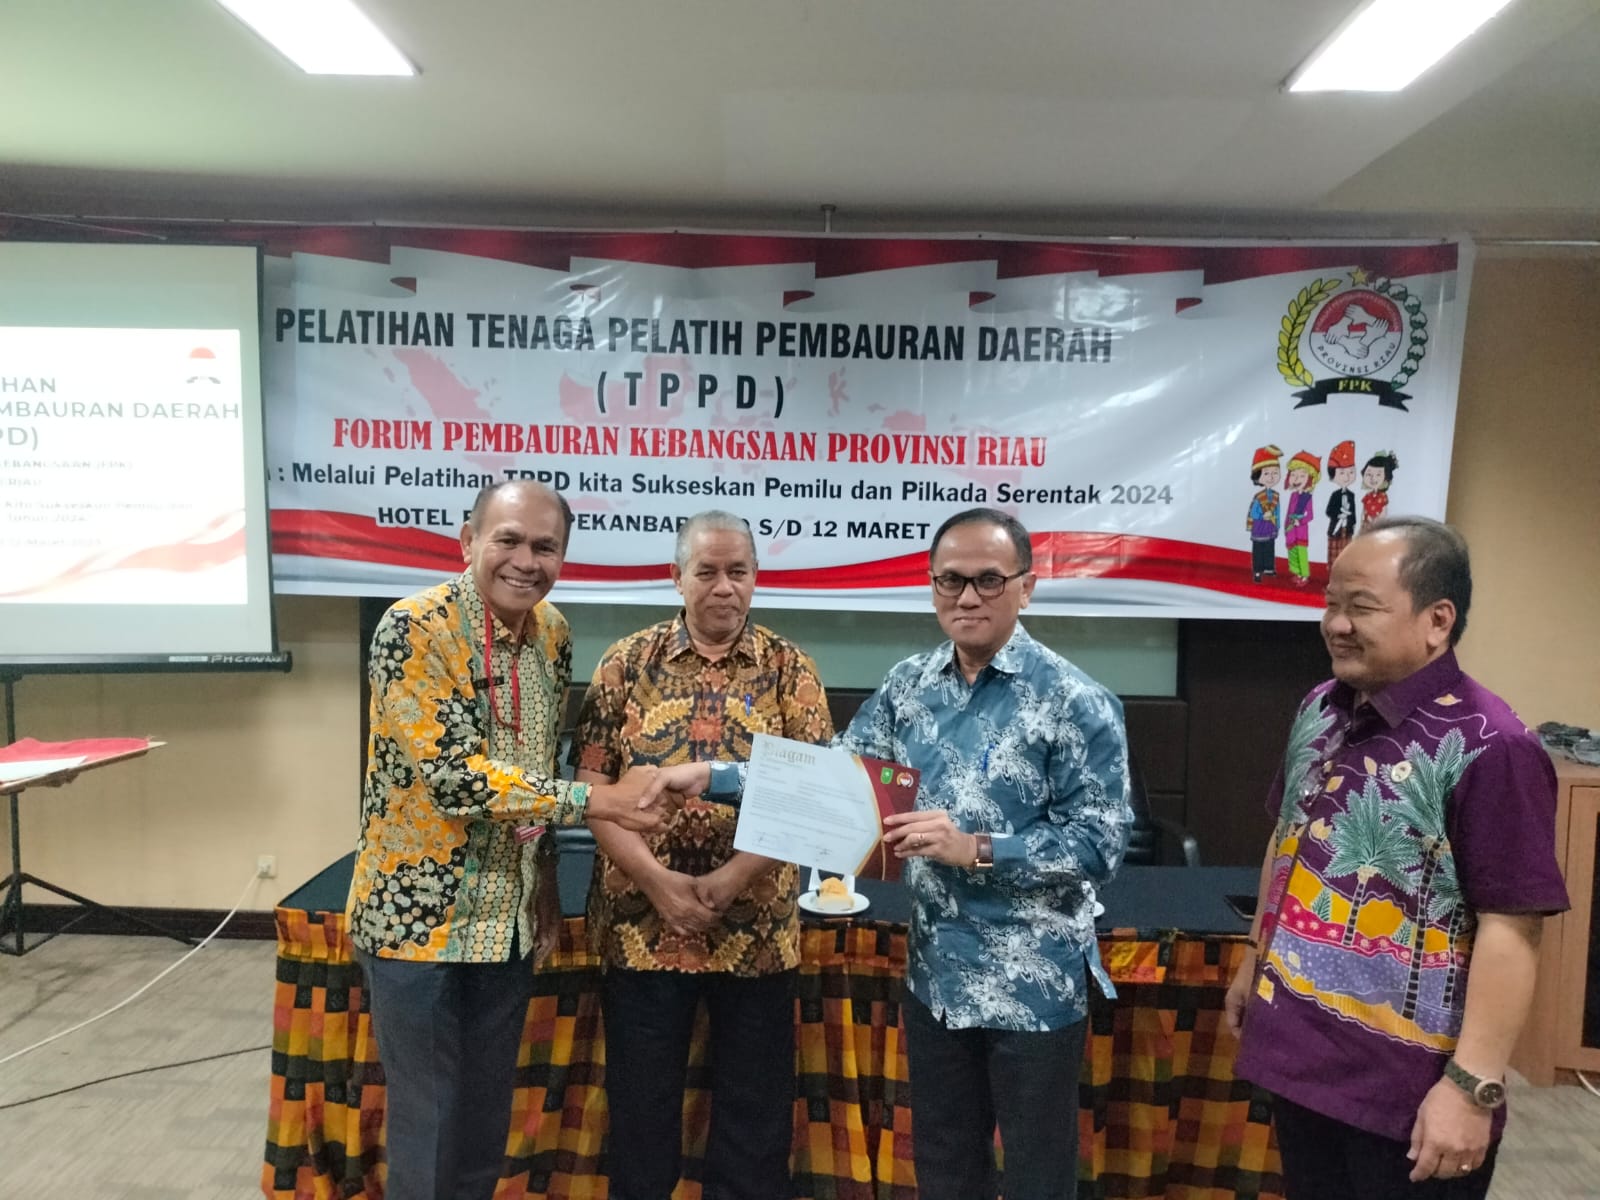 Pelatihan TPPD FPK Riau Ditutup, 29 Peserta Raih Sertifikat Fasilitator